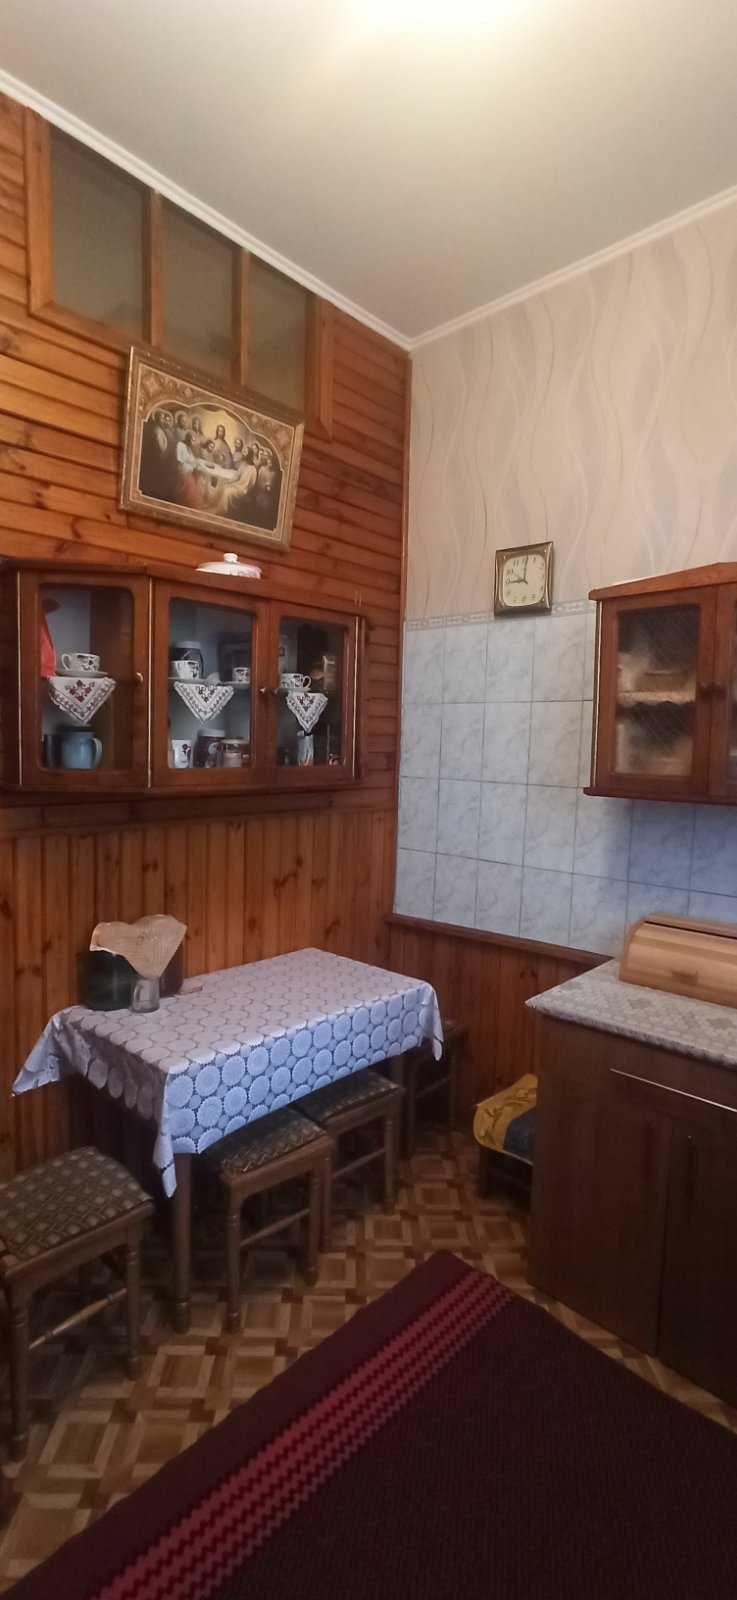 продам 2-х кімнатну квартиру по вул. гетьмана Мазепи (м. Здолбунів).